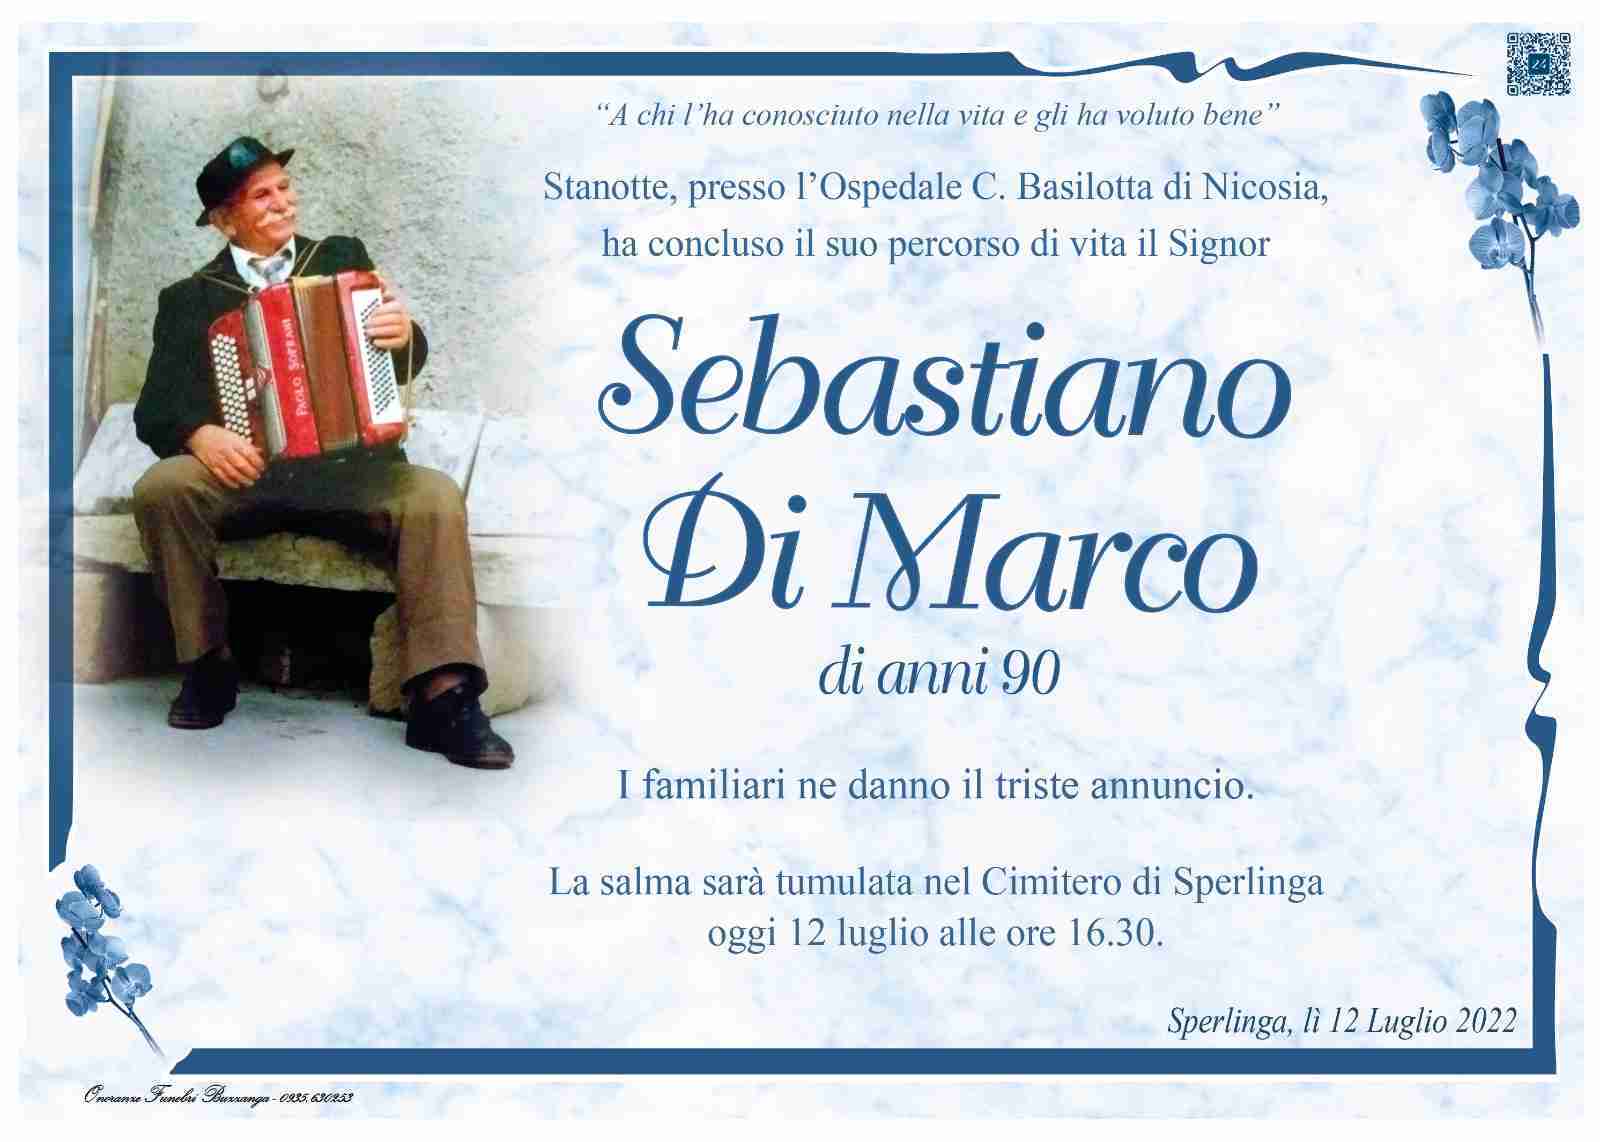 Sebastiano Di Marco